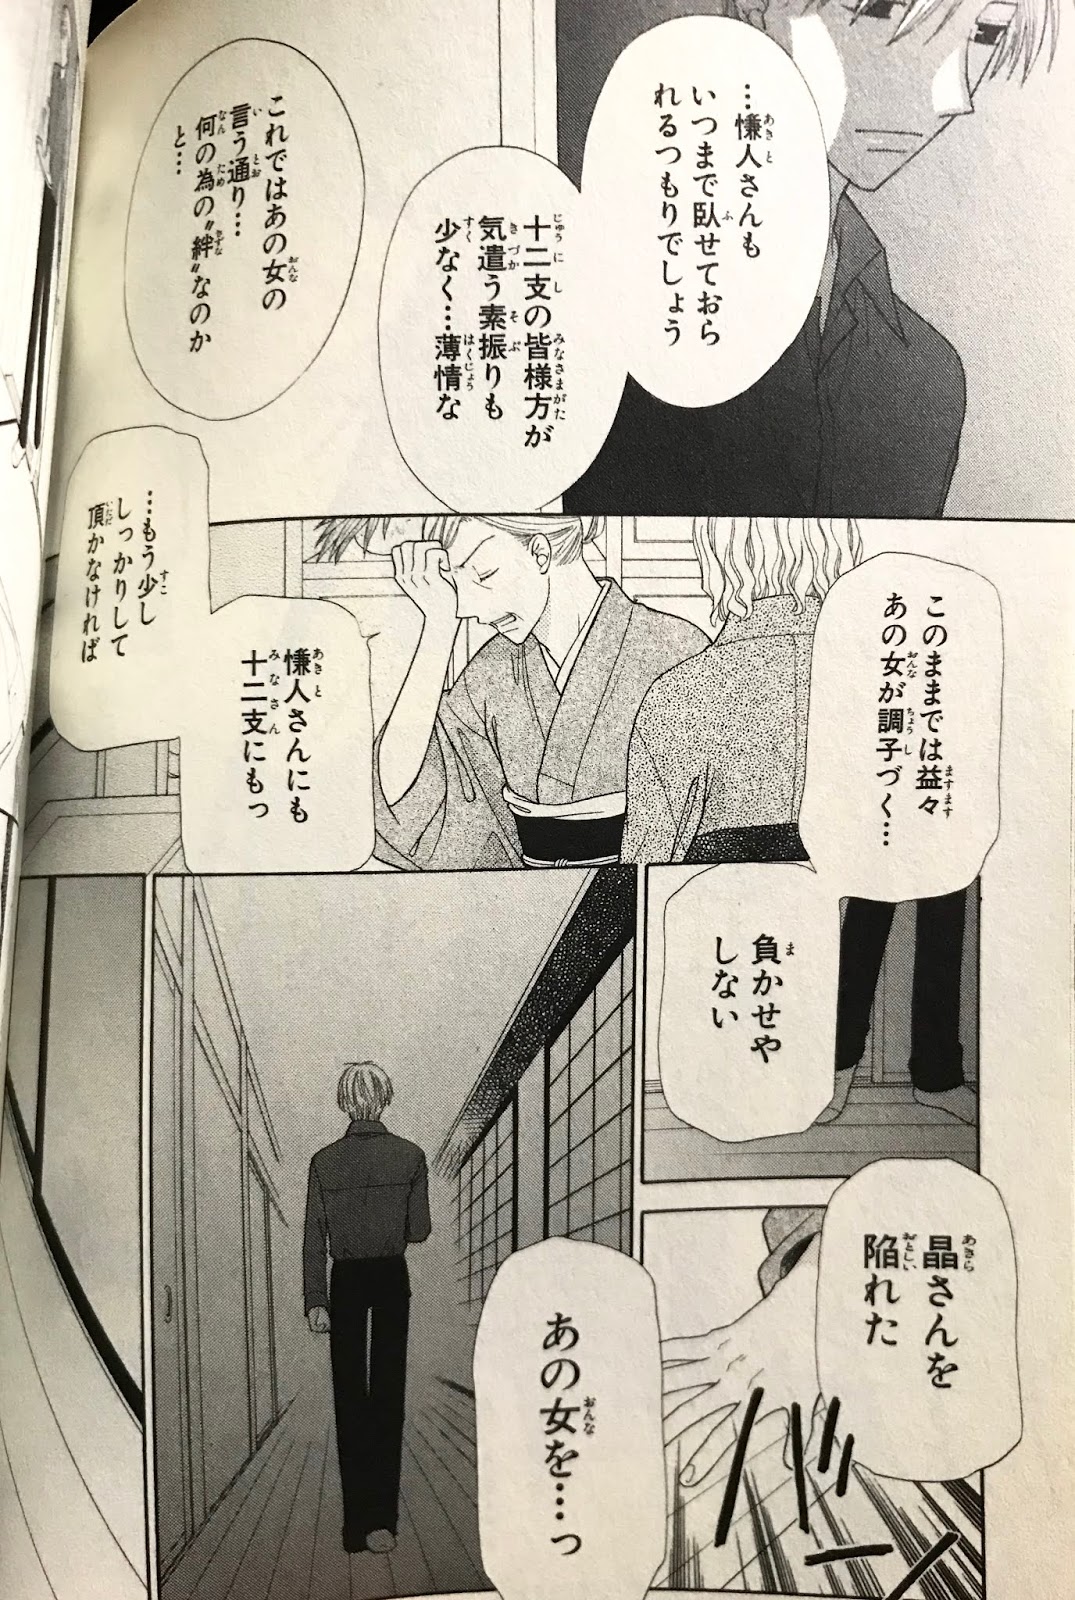 極楽京都日記 漫画感想 フルーツバスケット 高屋奈月 を読んで混乱している私